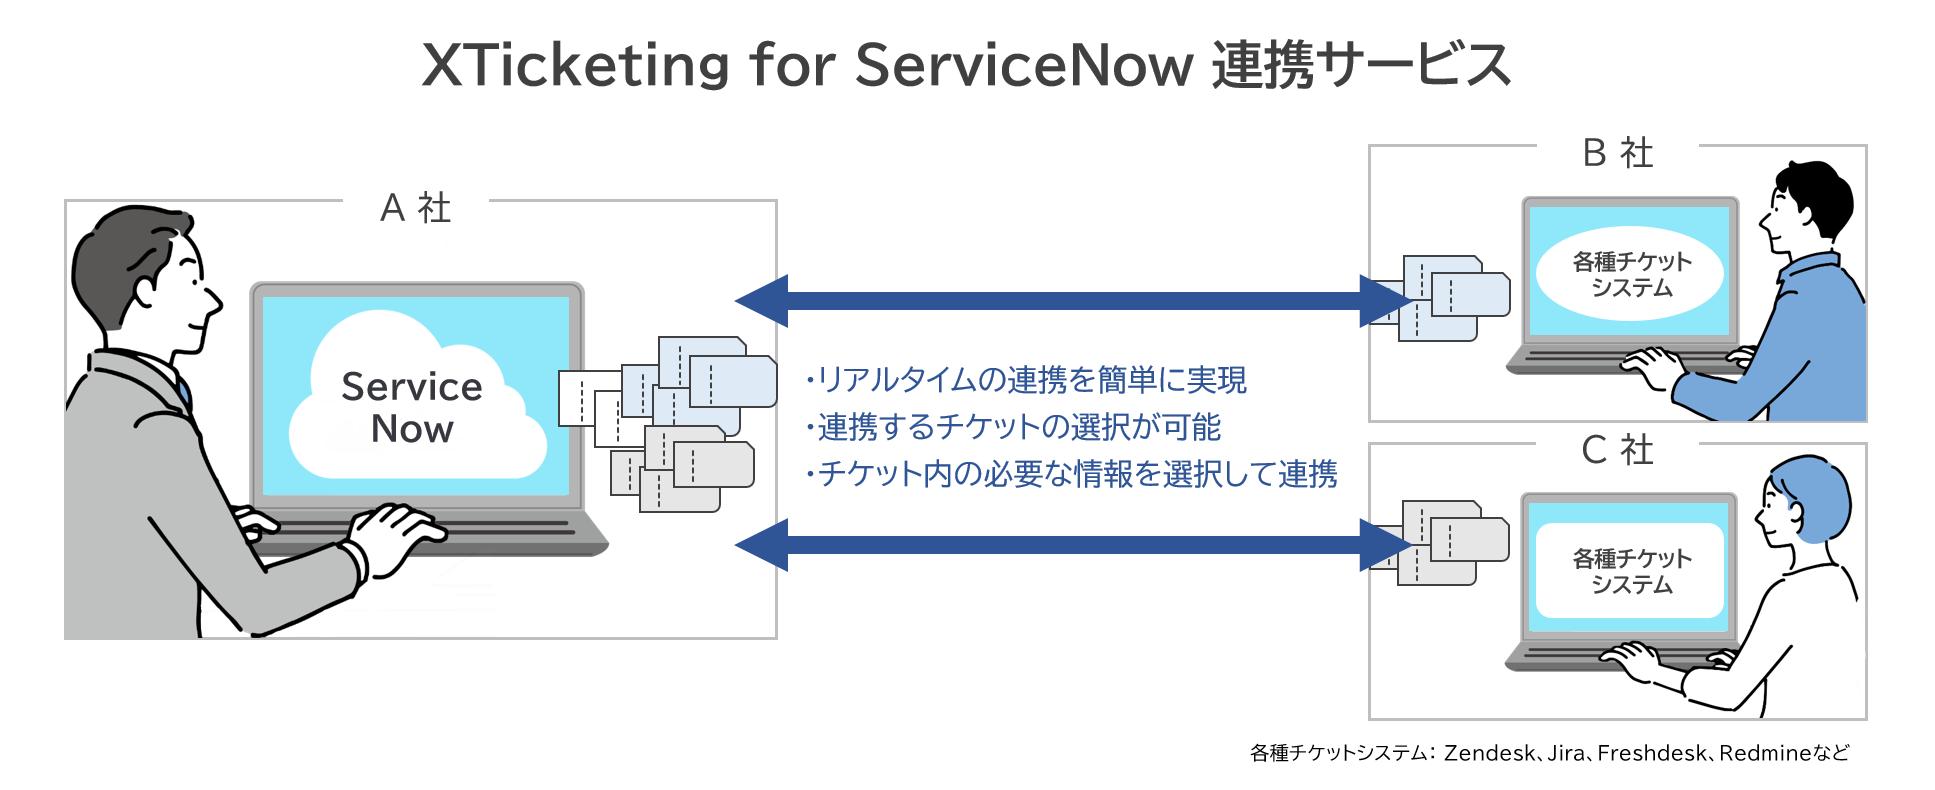 各種チケットシステムとServiceNow®のチケット連携を実現する「XTicketing for ServiceNow 連携サービス」を...